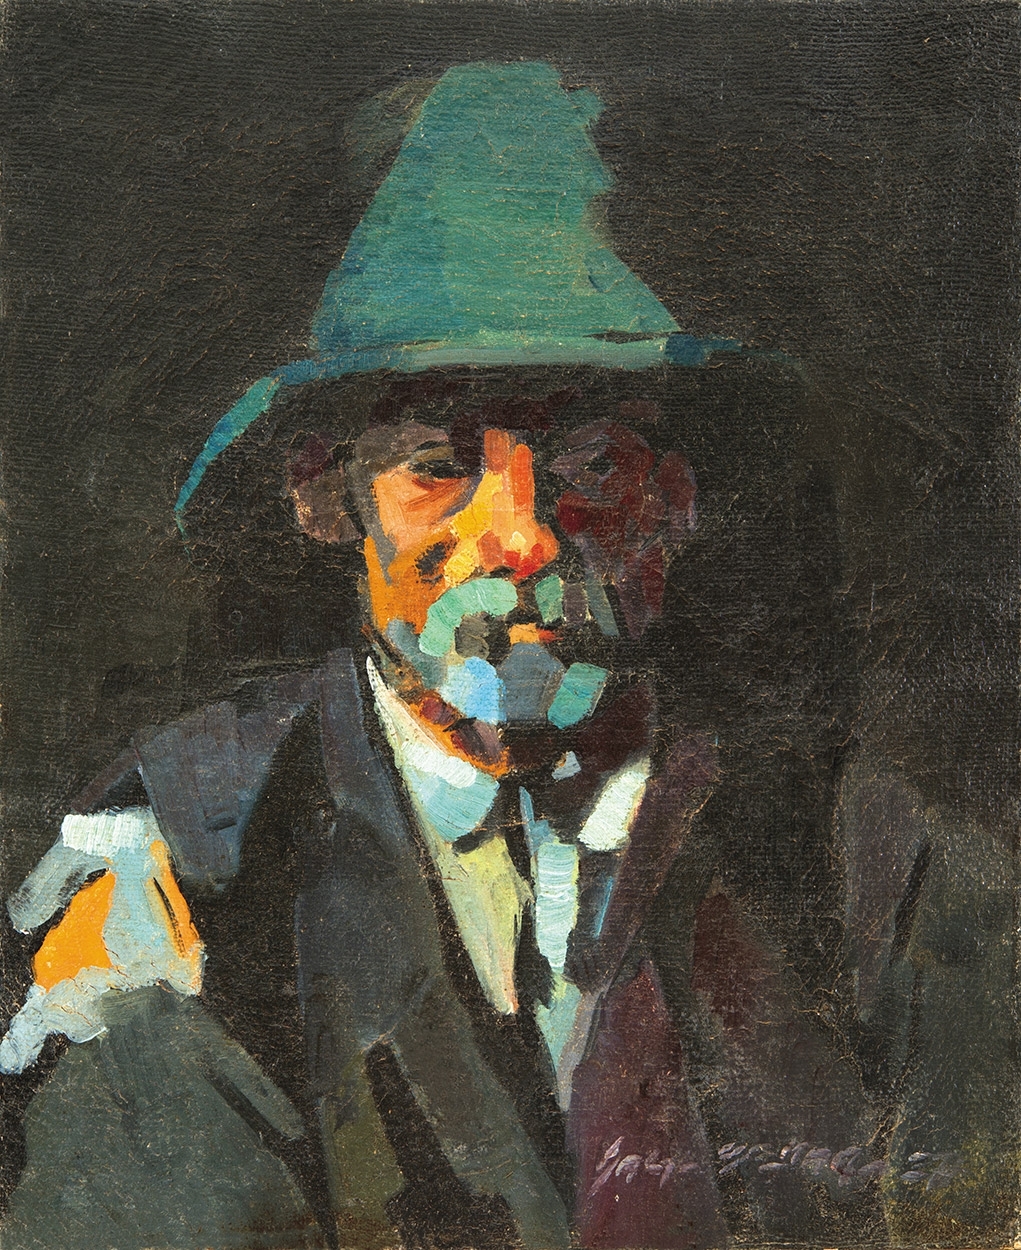 Nagy Oszkár (1883-1965) Portrait of a Man, 1937